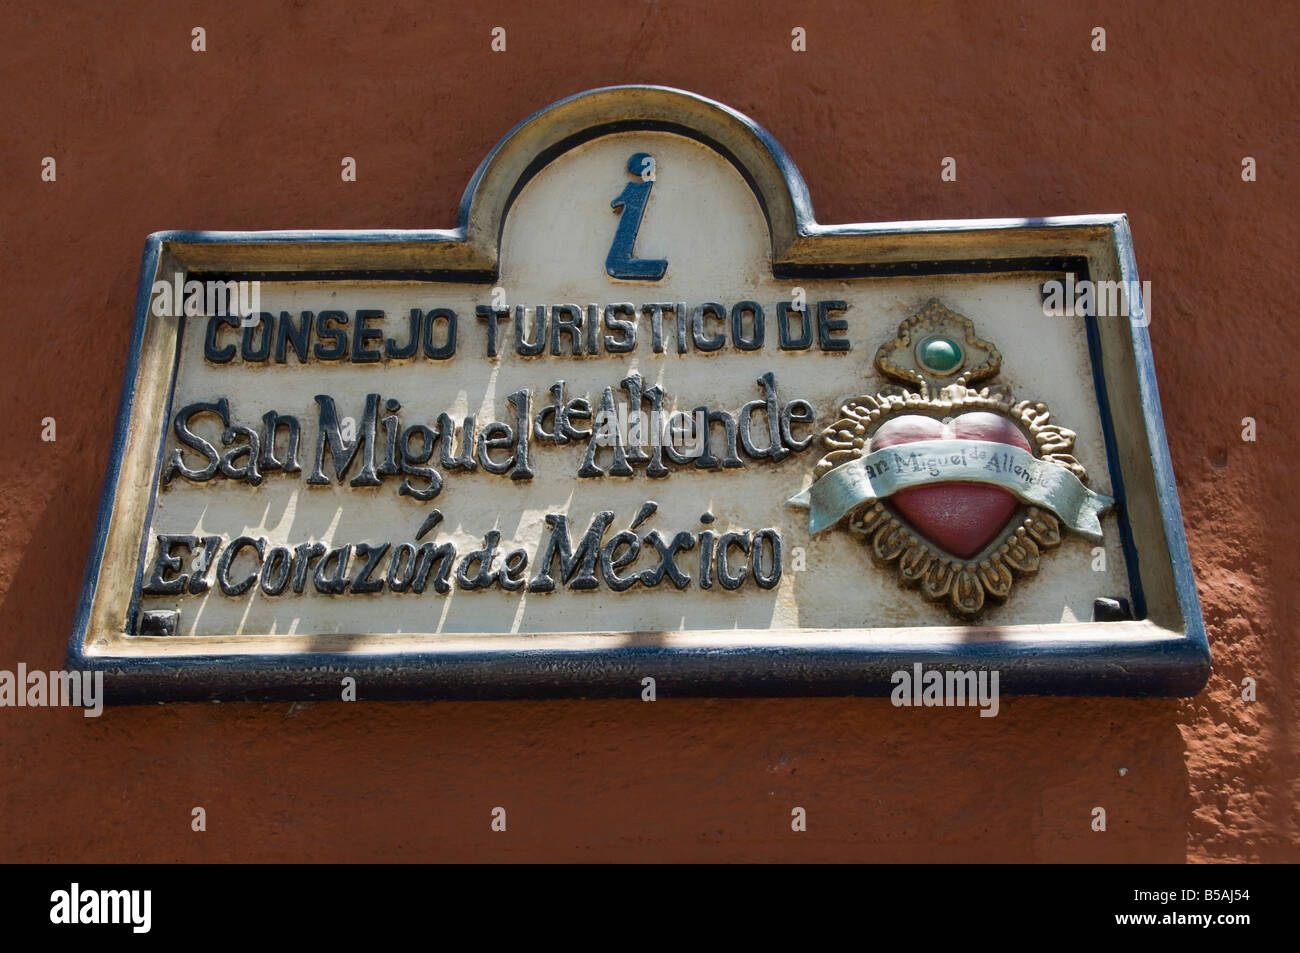 Tourist office sign, San Miguel, Guanajuato State, Mexico, North America Stock Photo